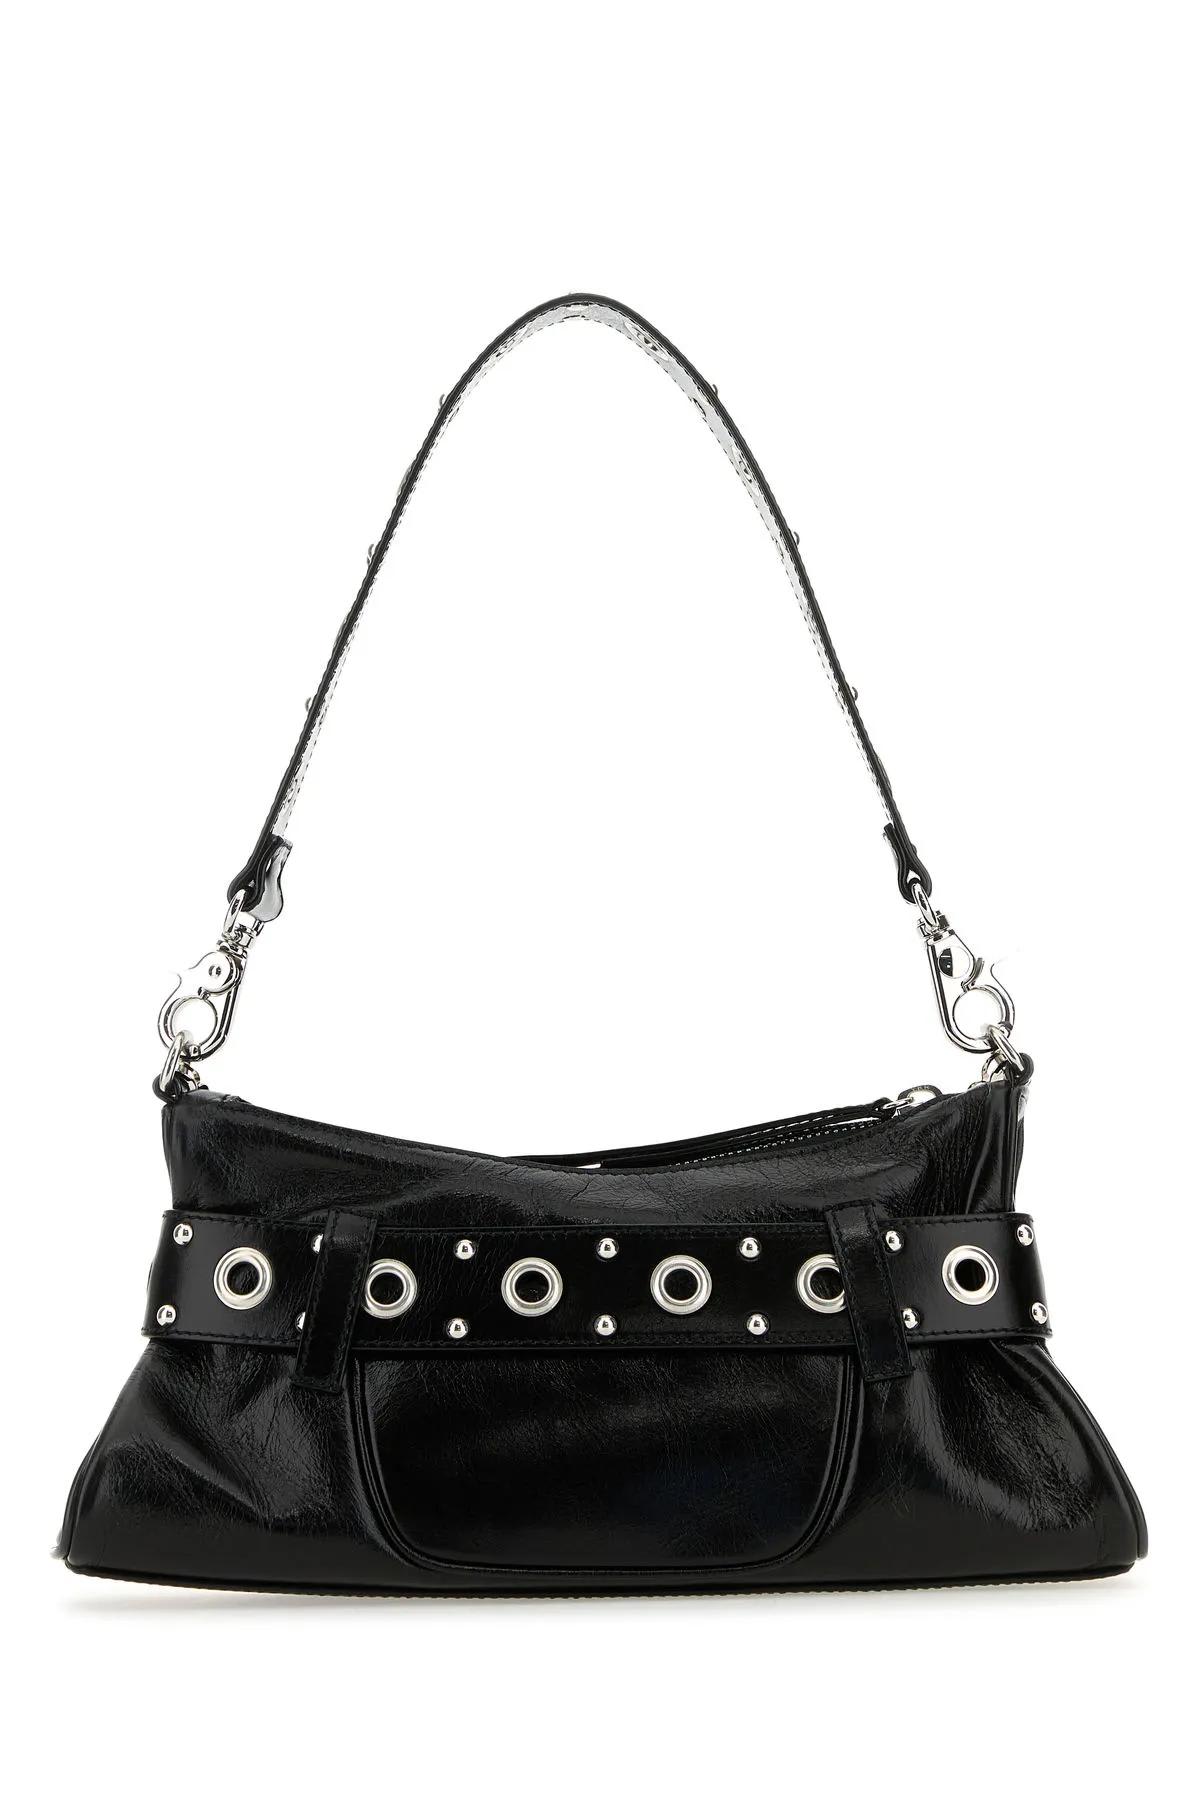 Shop Dsquared2 Black Leather Gothic Shoulder Bag